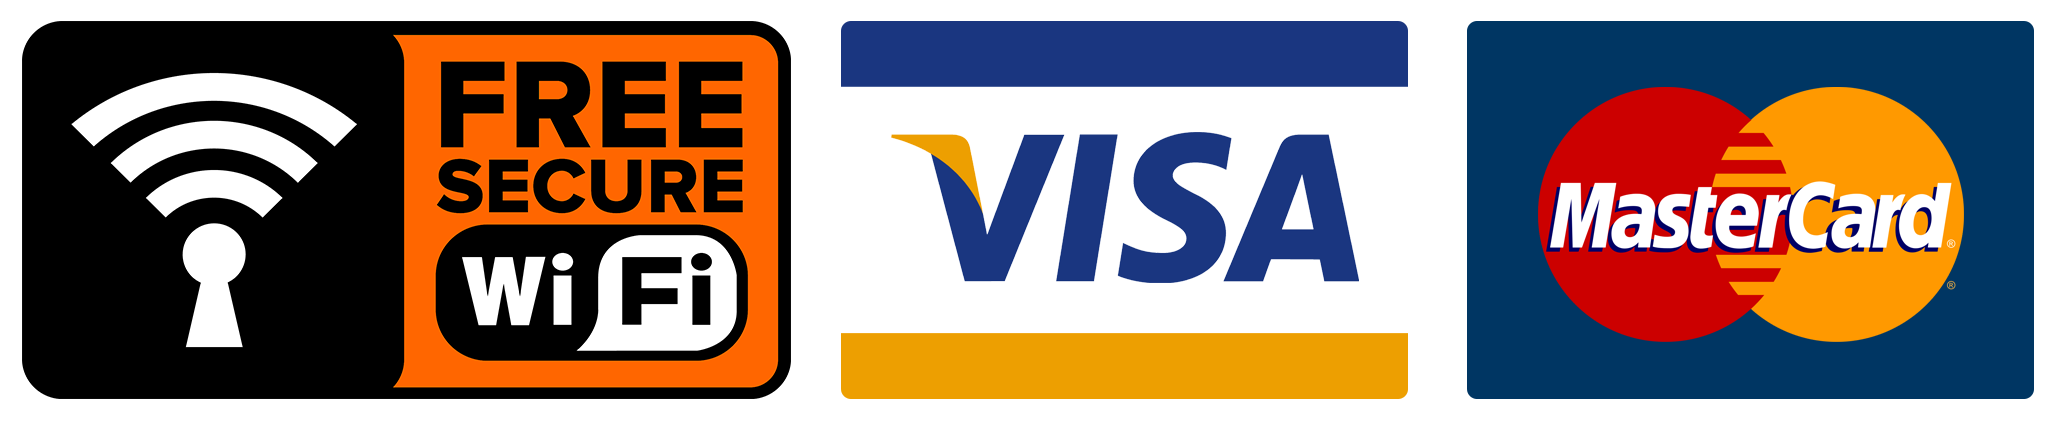 Visa MASTERCARD